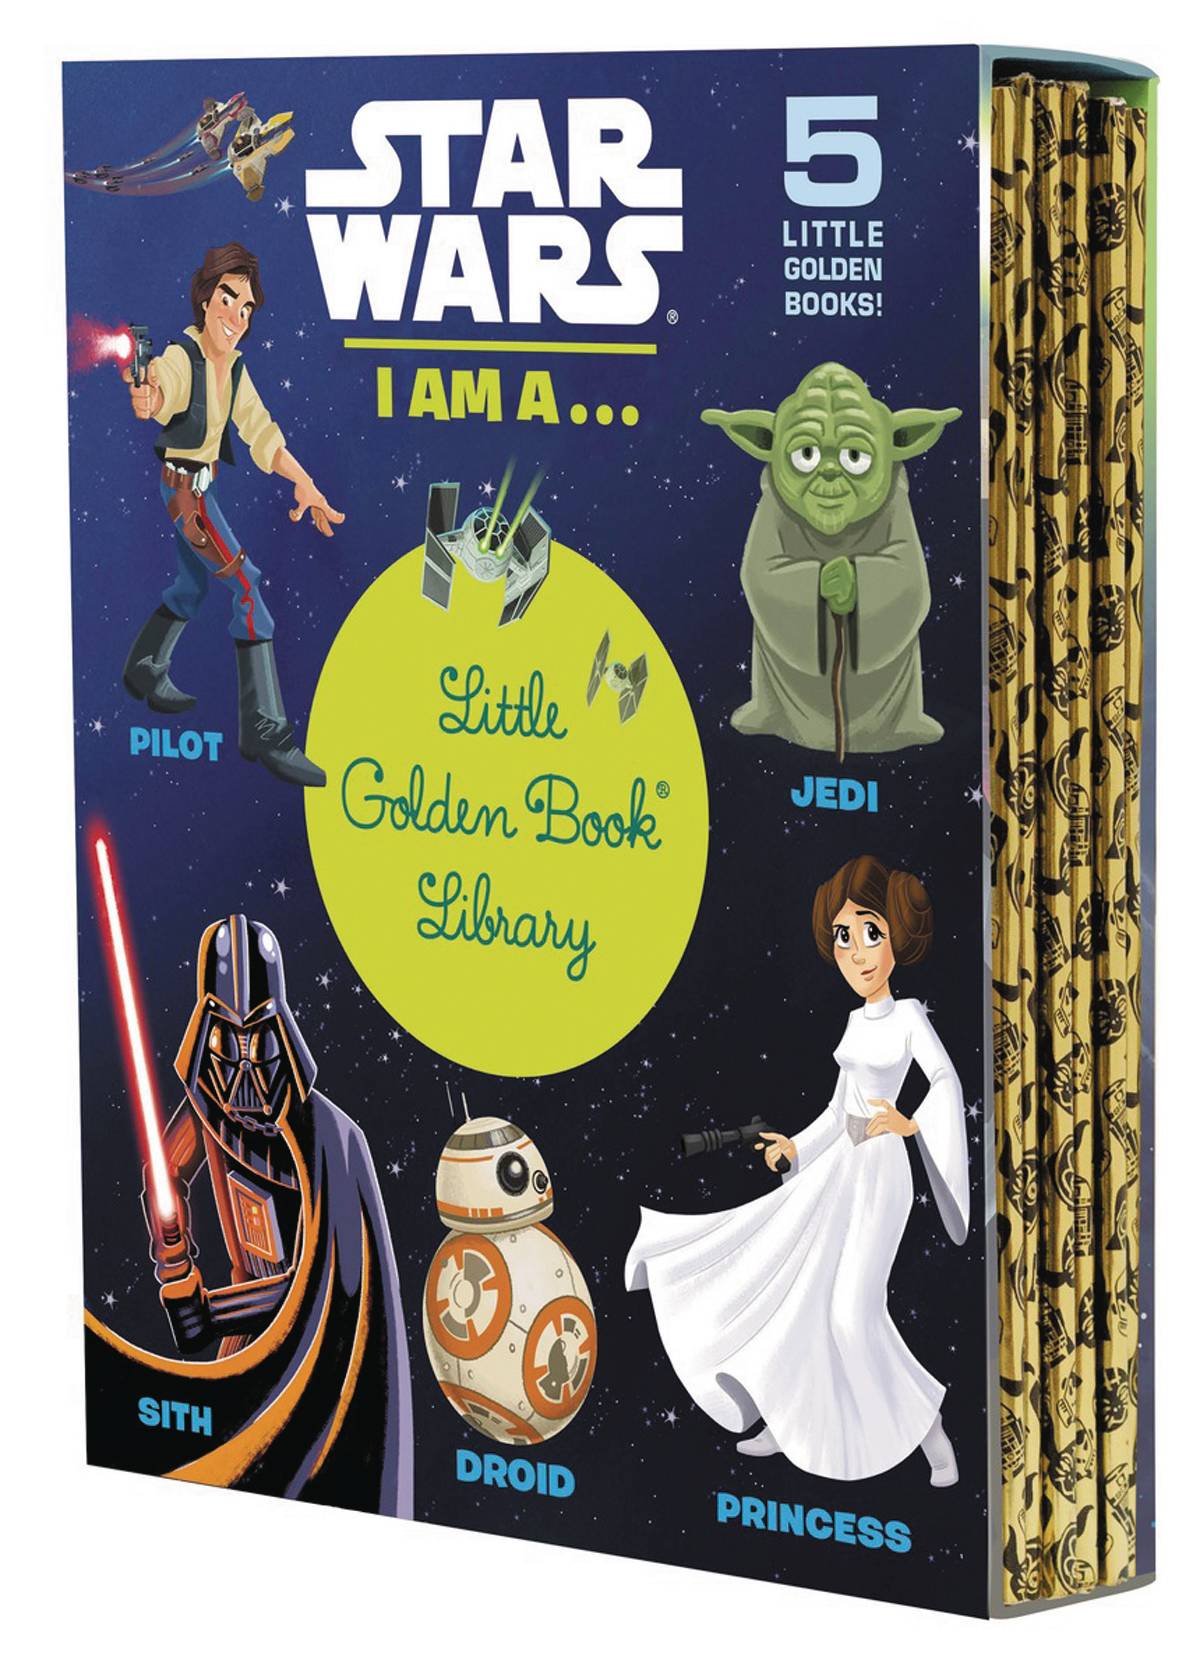 Little Wars книга. Книга Star Wars для детей. Звездные войны том 1 книга. Библиотека Звездные войны. I am книга